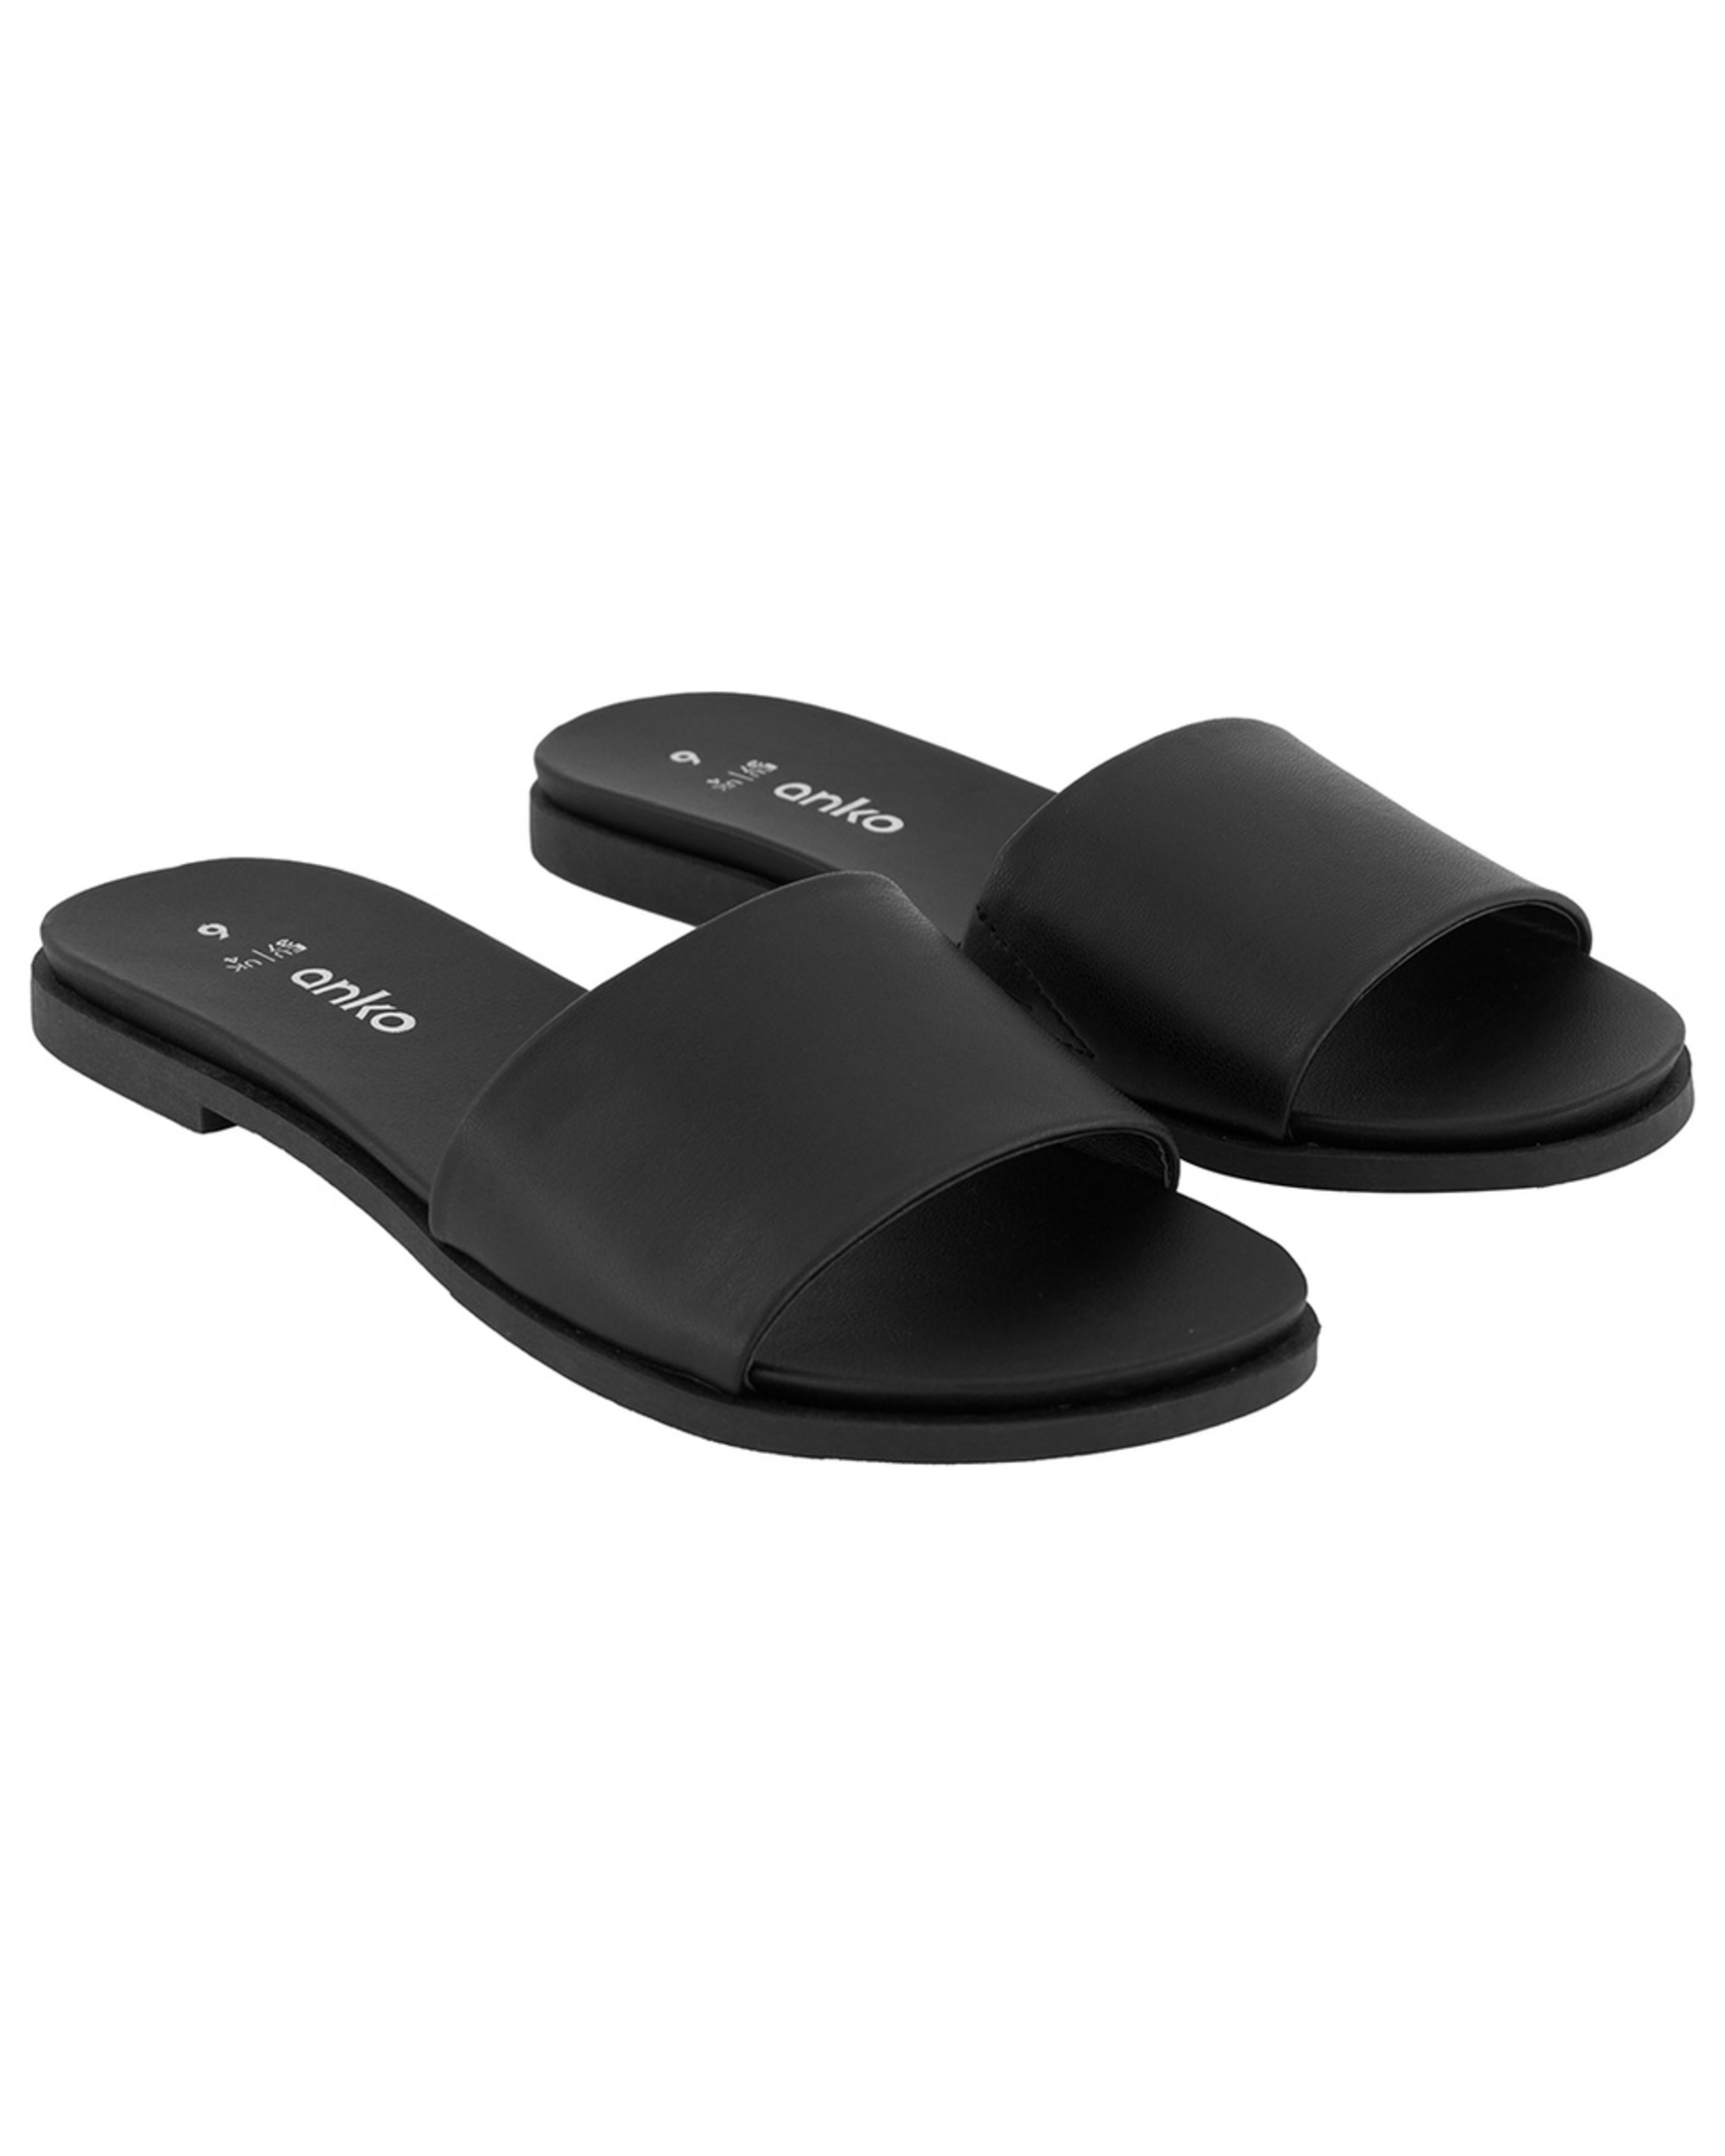 Comfort Footbed Slides - Kmart